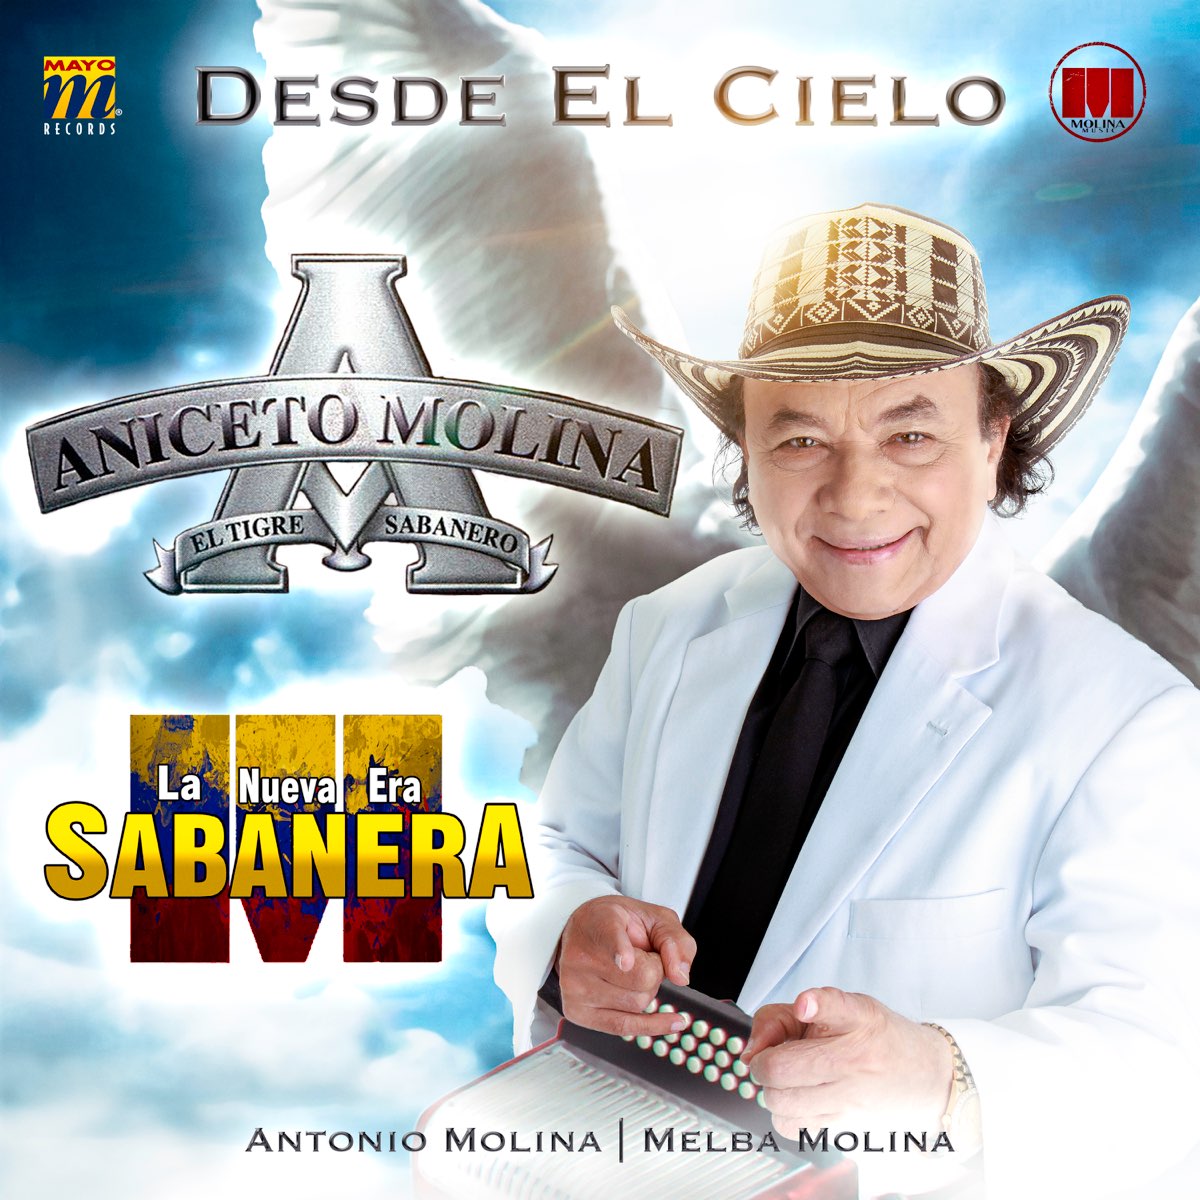 Desde el Cielo (feat. La Nueva Era Sabanera, Antonio Molina & Melba Molina)  de Aniceto Molina en Apple Music